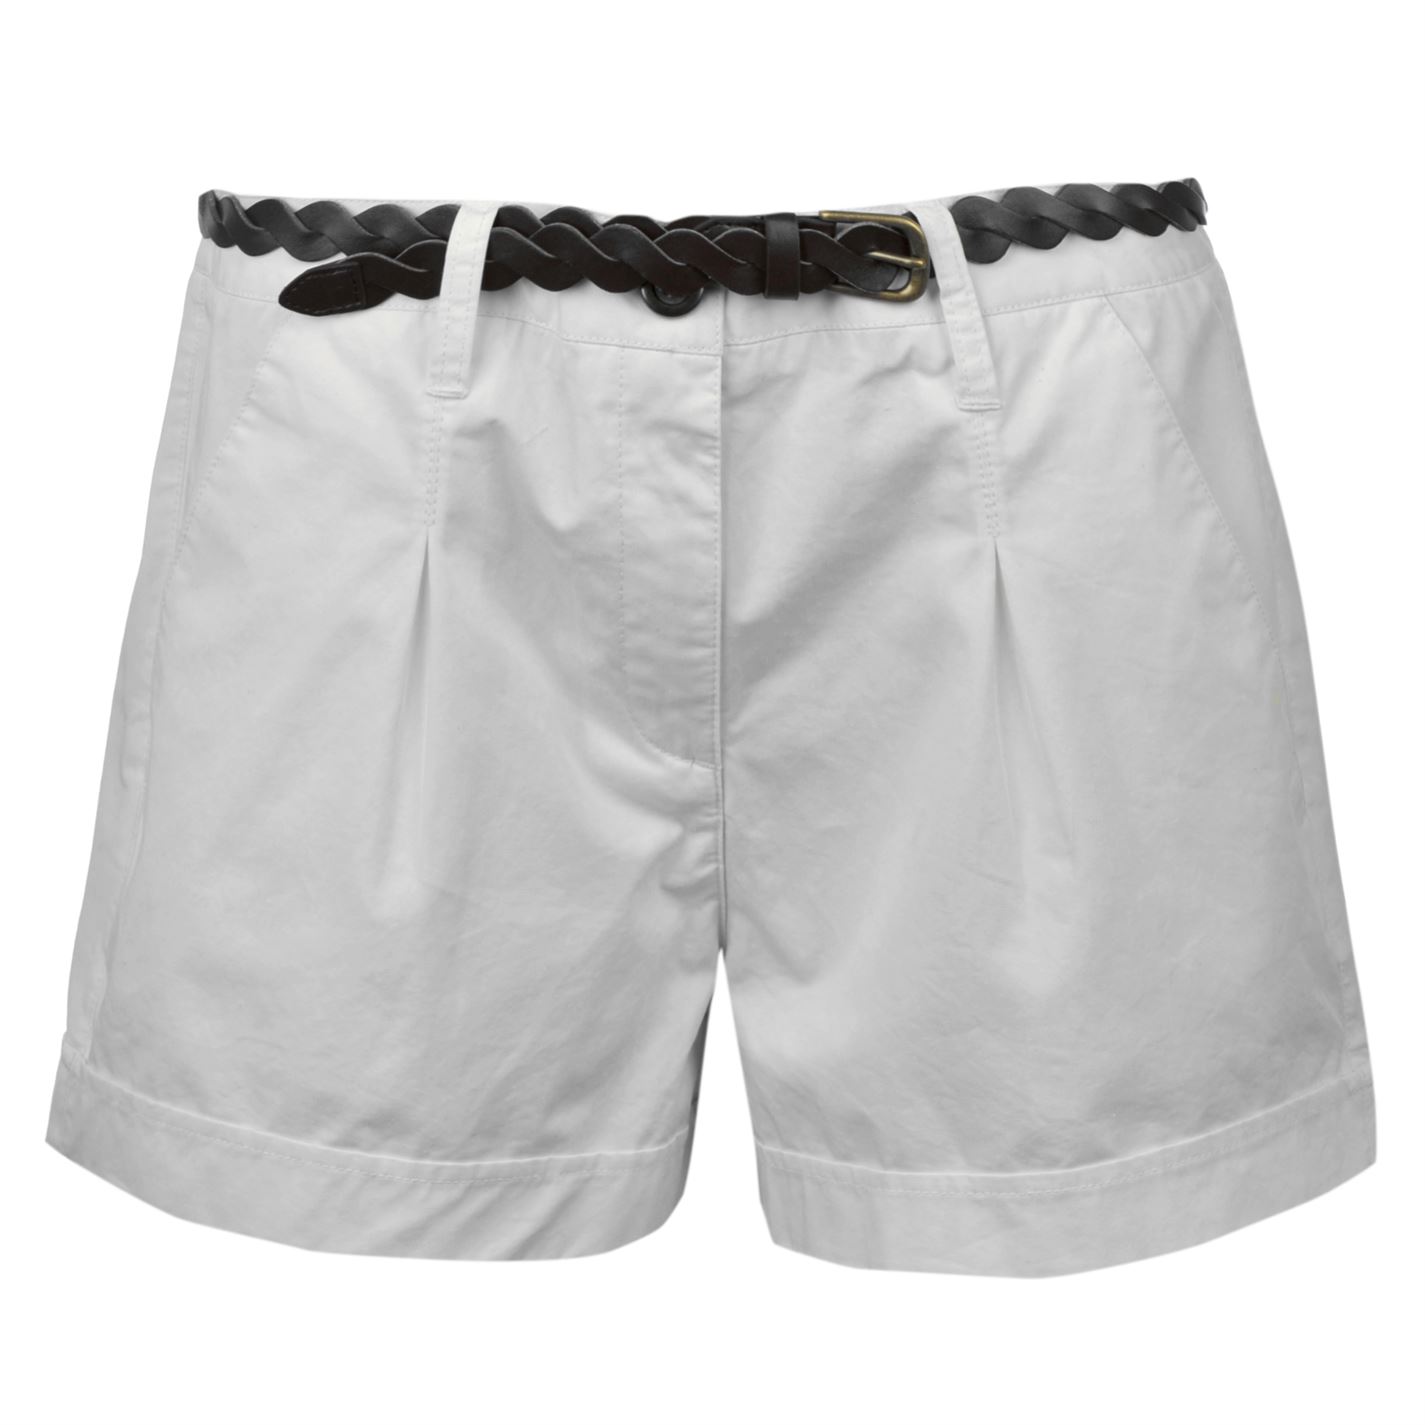 ladies shorts – 9 – careyfashion.com